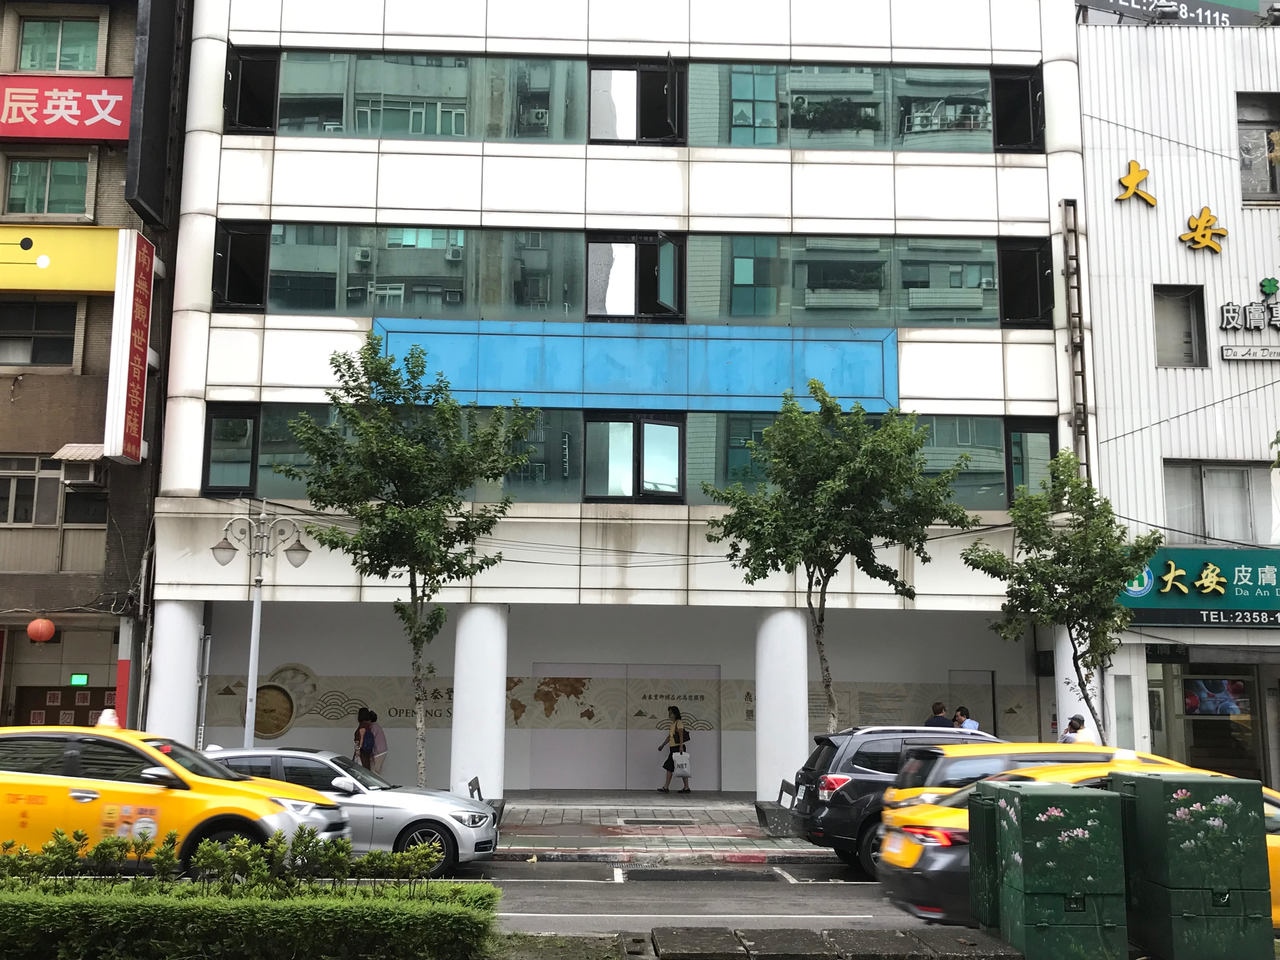 鼎泰豐將在台北市永康商圈開出「信義二店」，地點就在信義路277號，位於信義本店斜對面。目前內部正在整修中，預期12月上旬開幕。 記者黃文奇/攝影